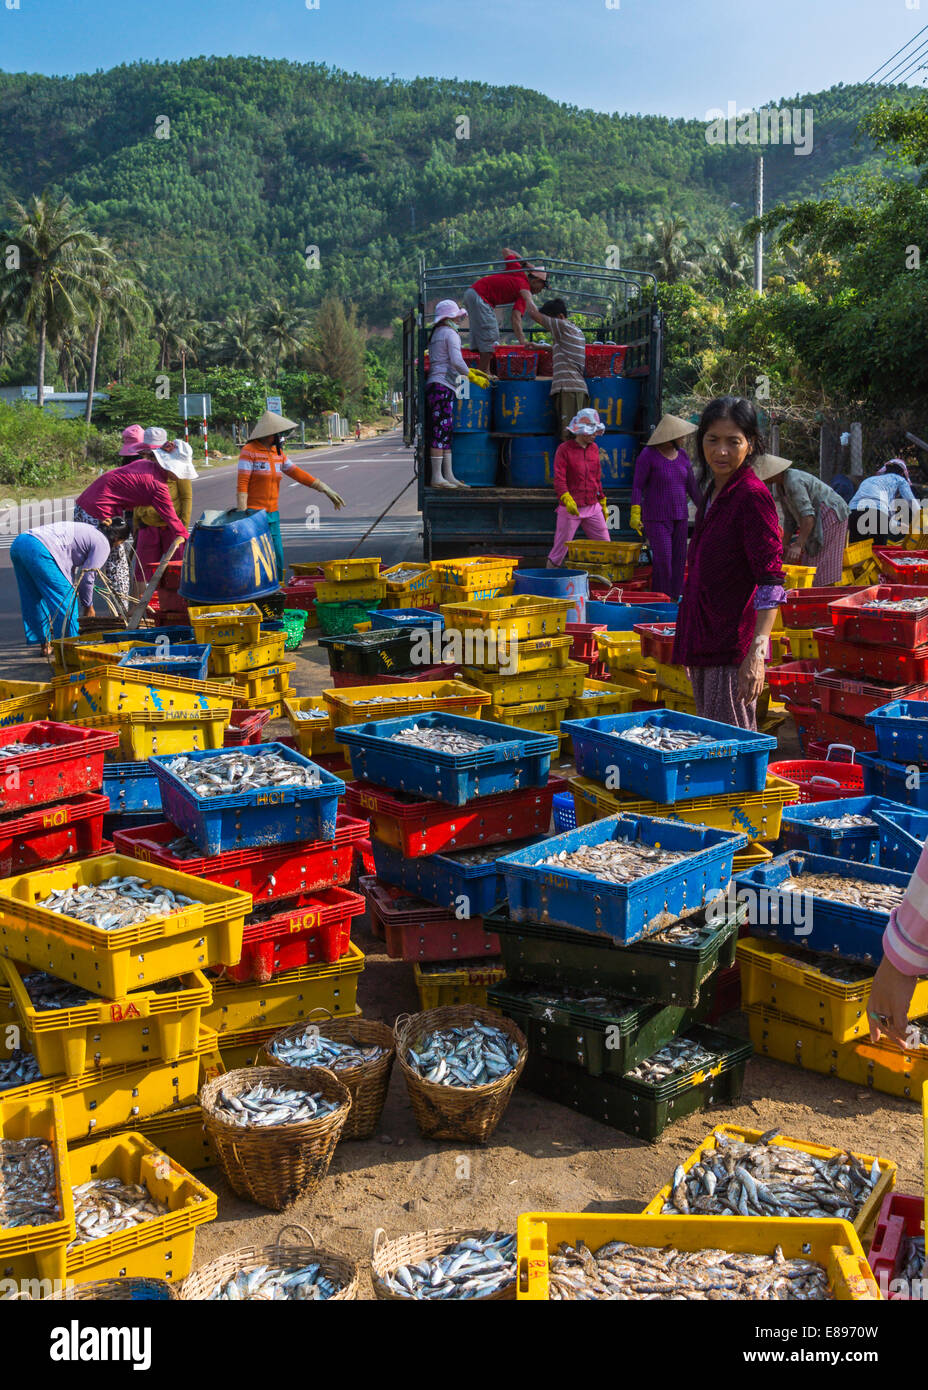 La plage de Qui Nhon Vietnam - Mars 2012 : Des tas de poisson sur le jaune, bleu et rouge les contenants en plastique sont triés. Banque D'Images